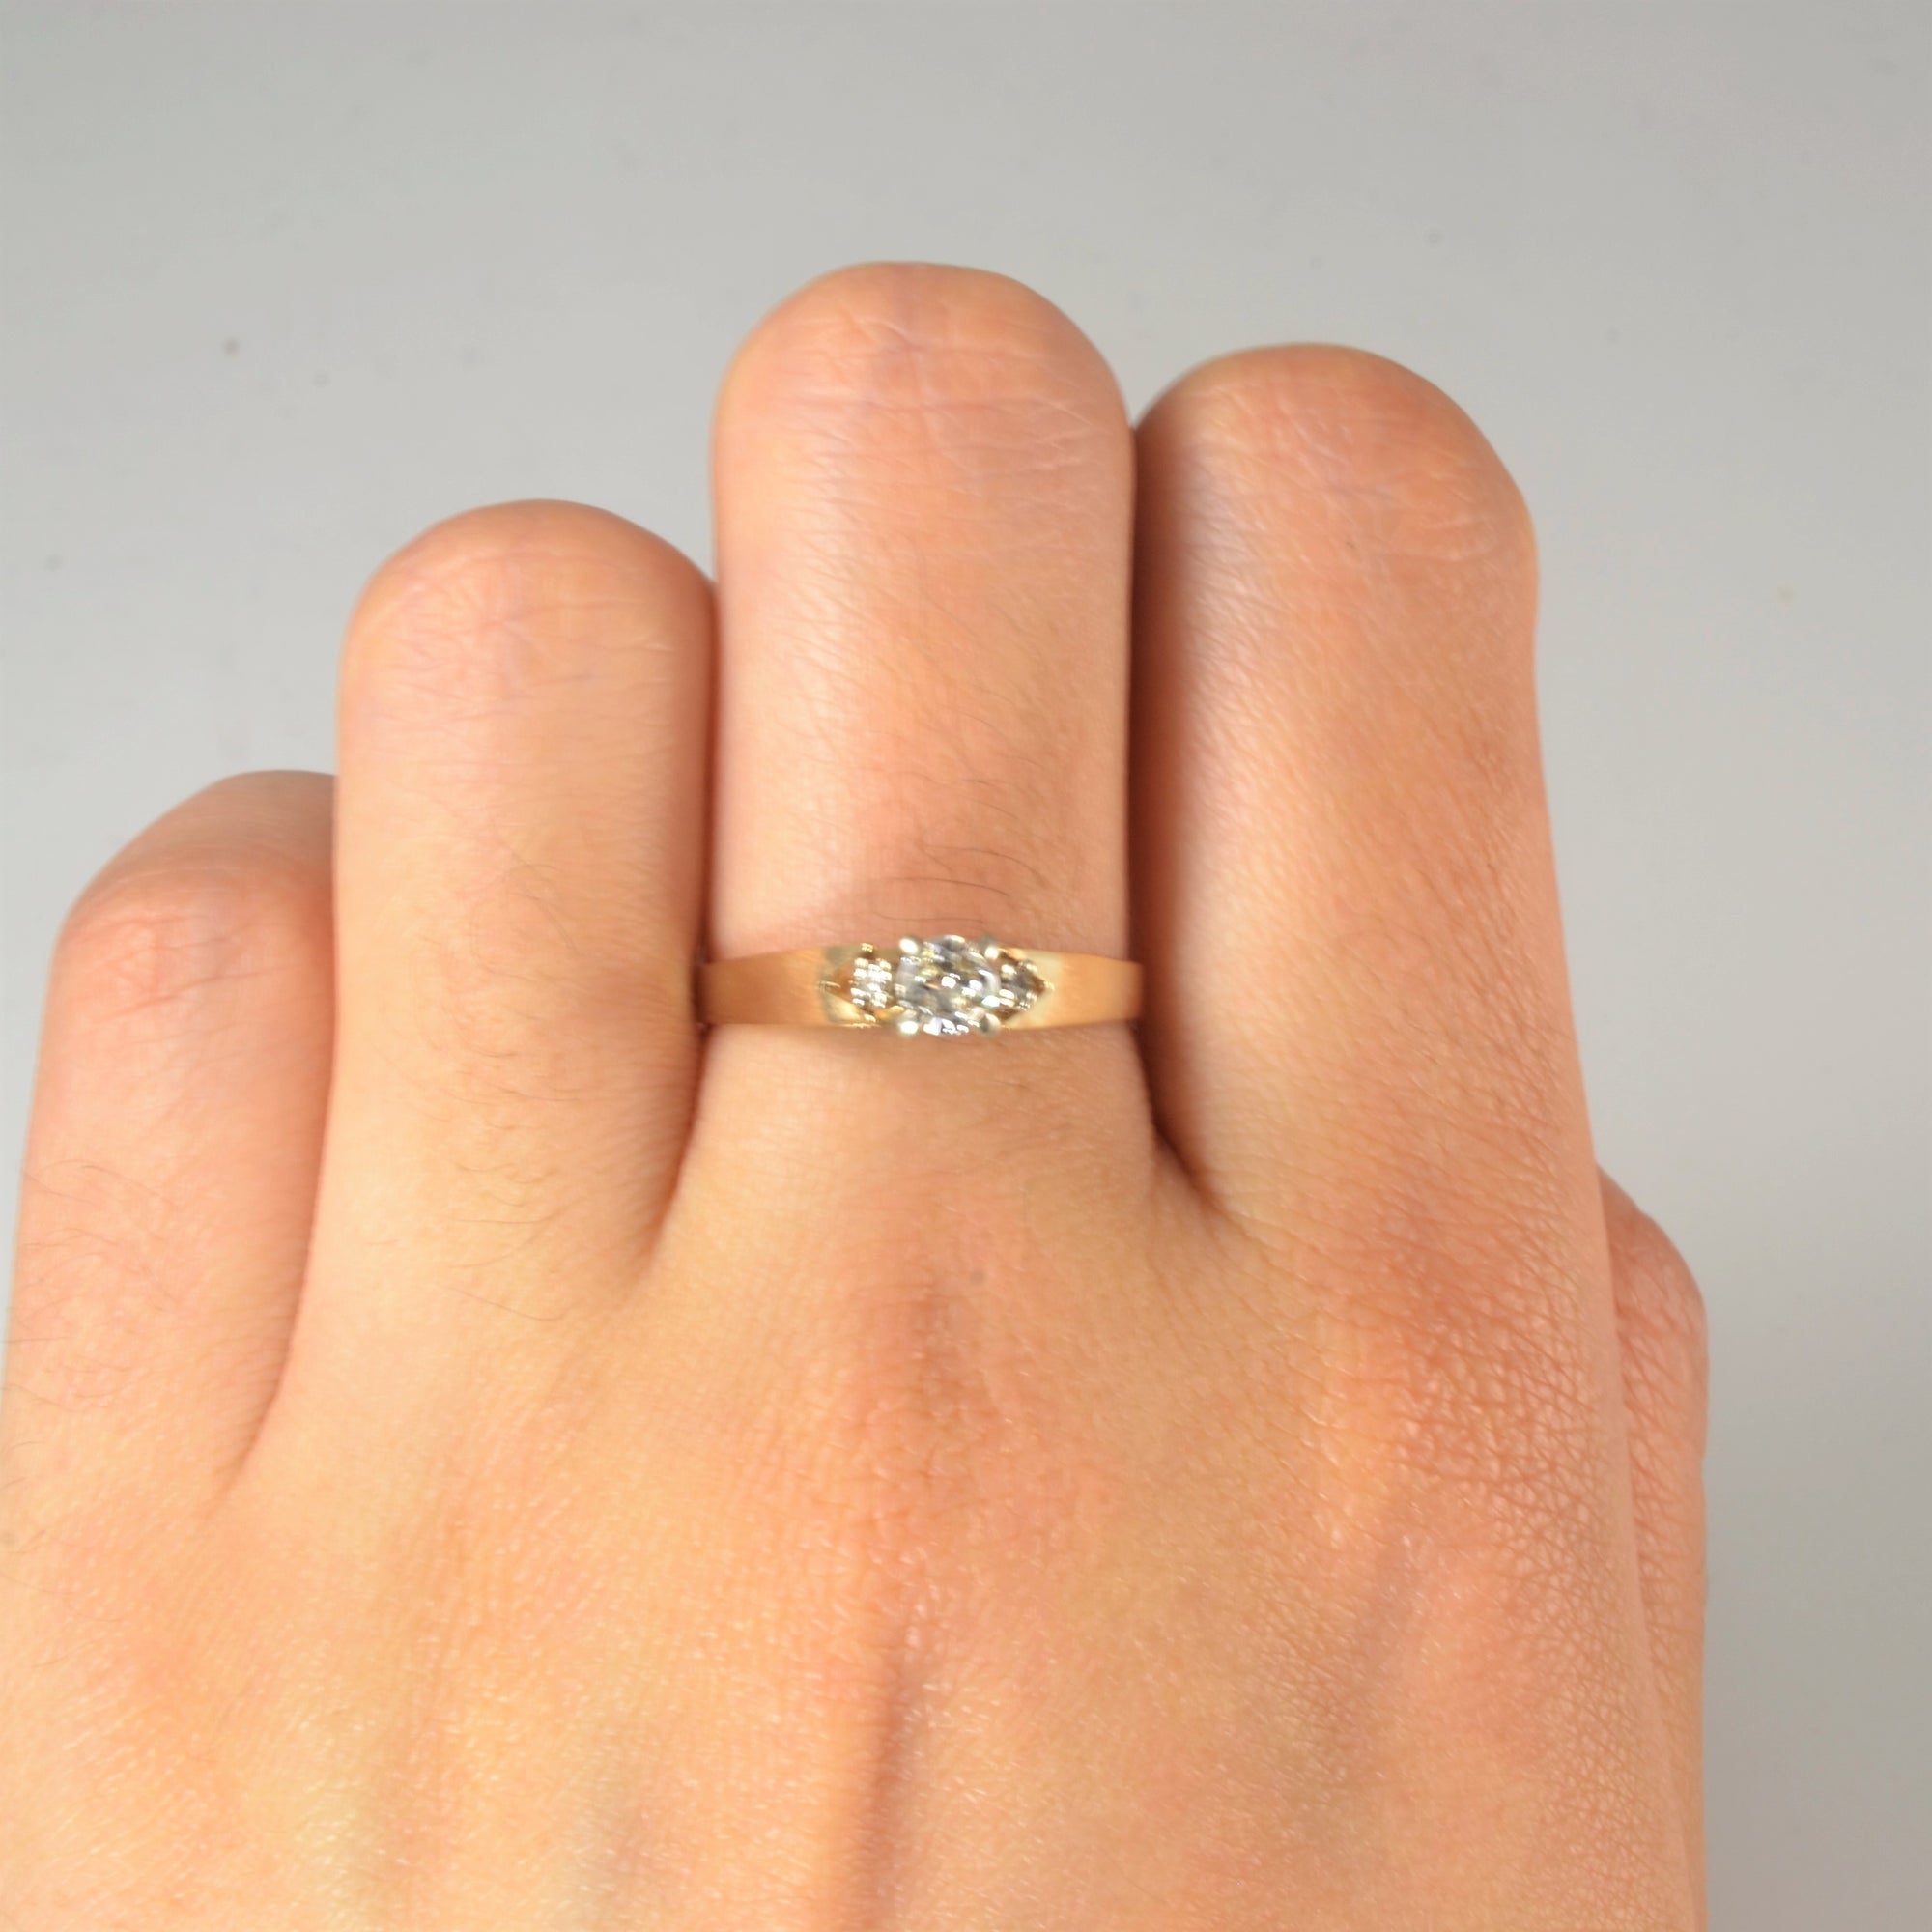 Petite Three Stone Diamond Ring | 0.24ctw | SZ 7.5 |